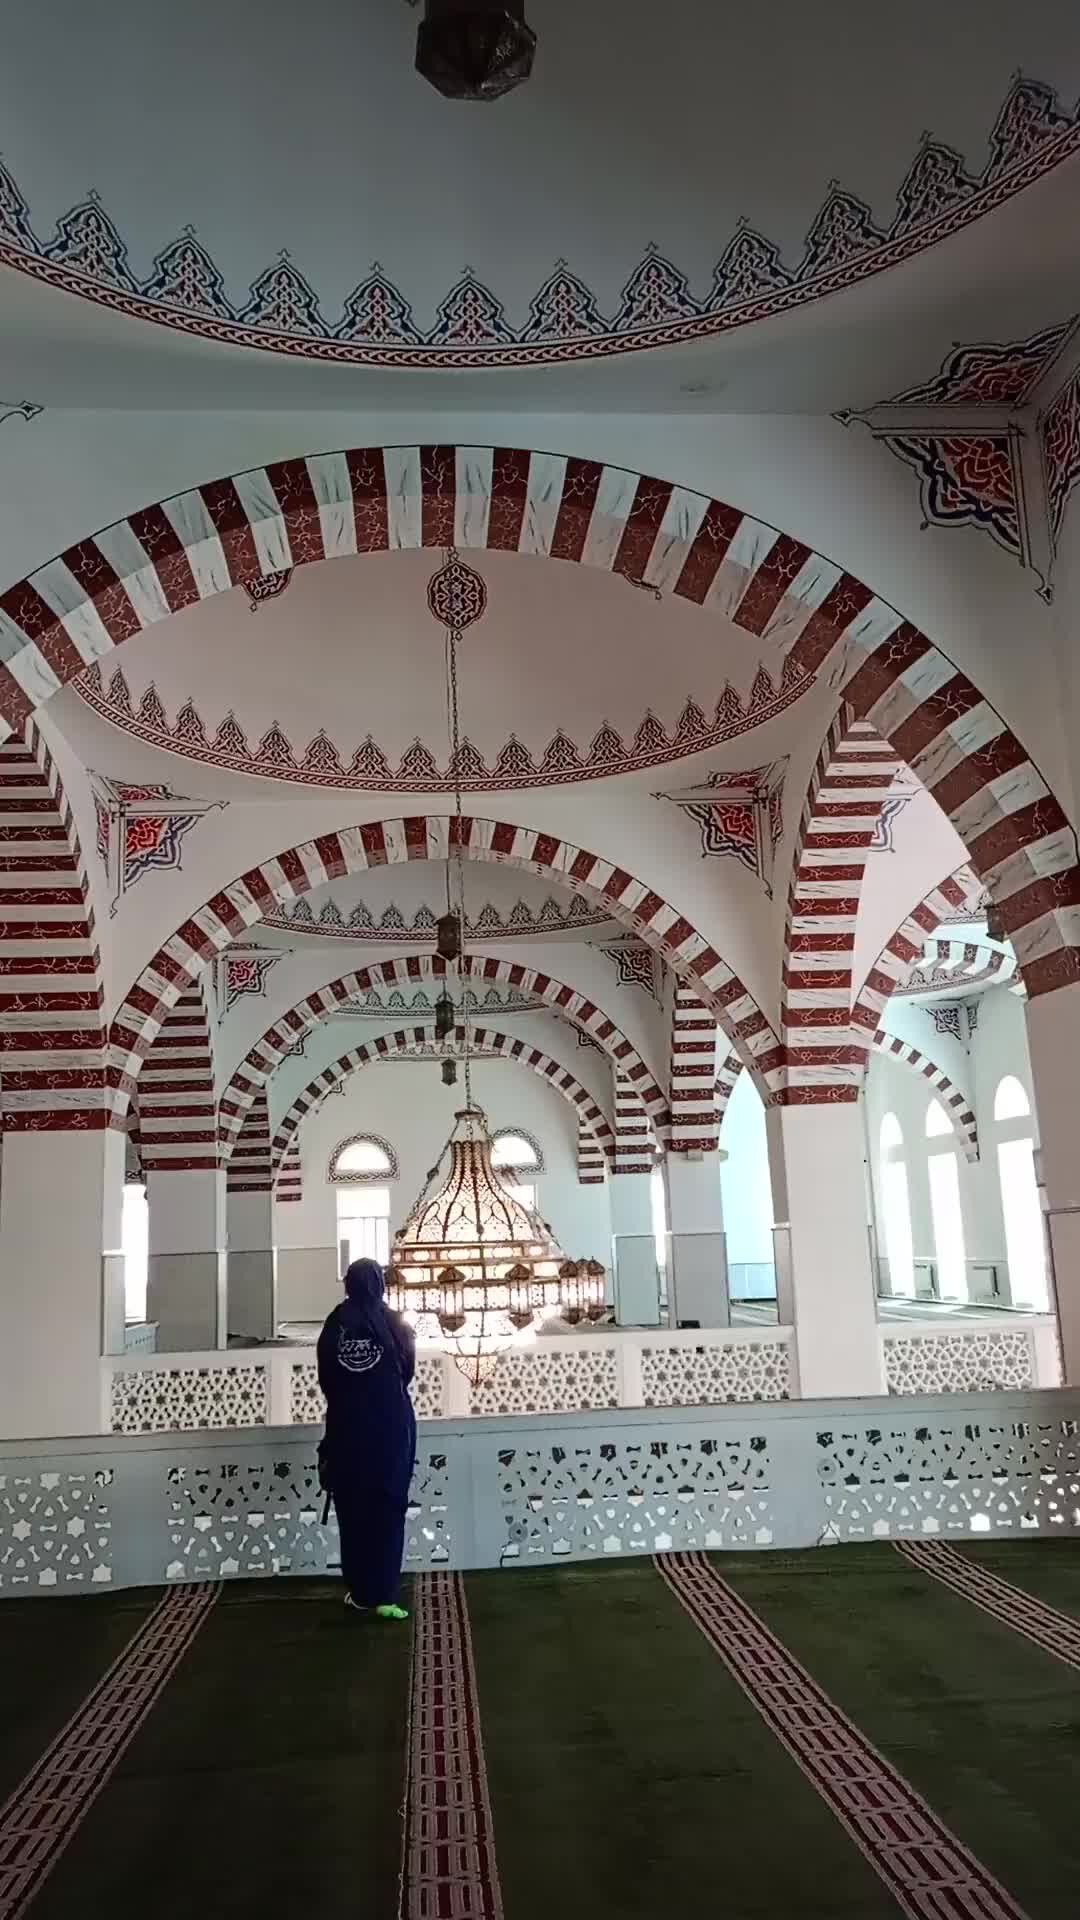 Эта мечеть выглядит обычной снаружи, но волшебной внутри (Фото)